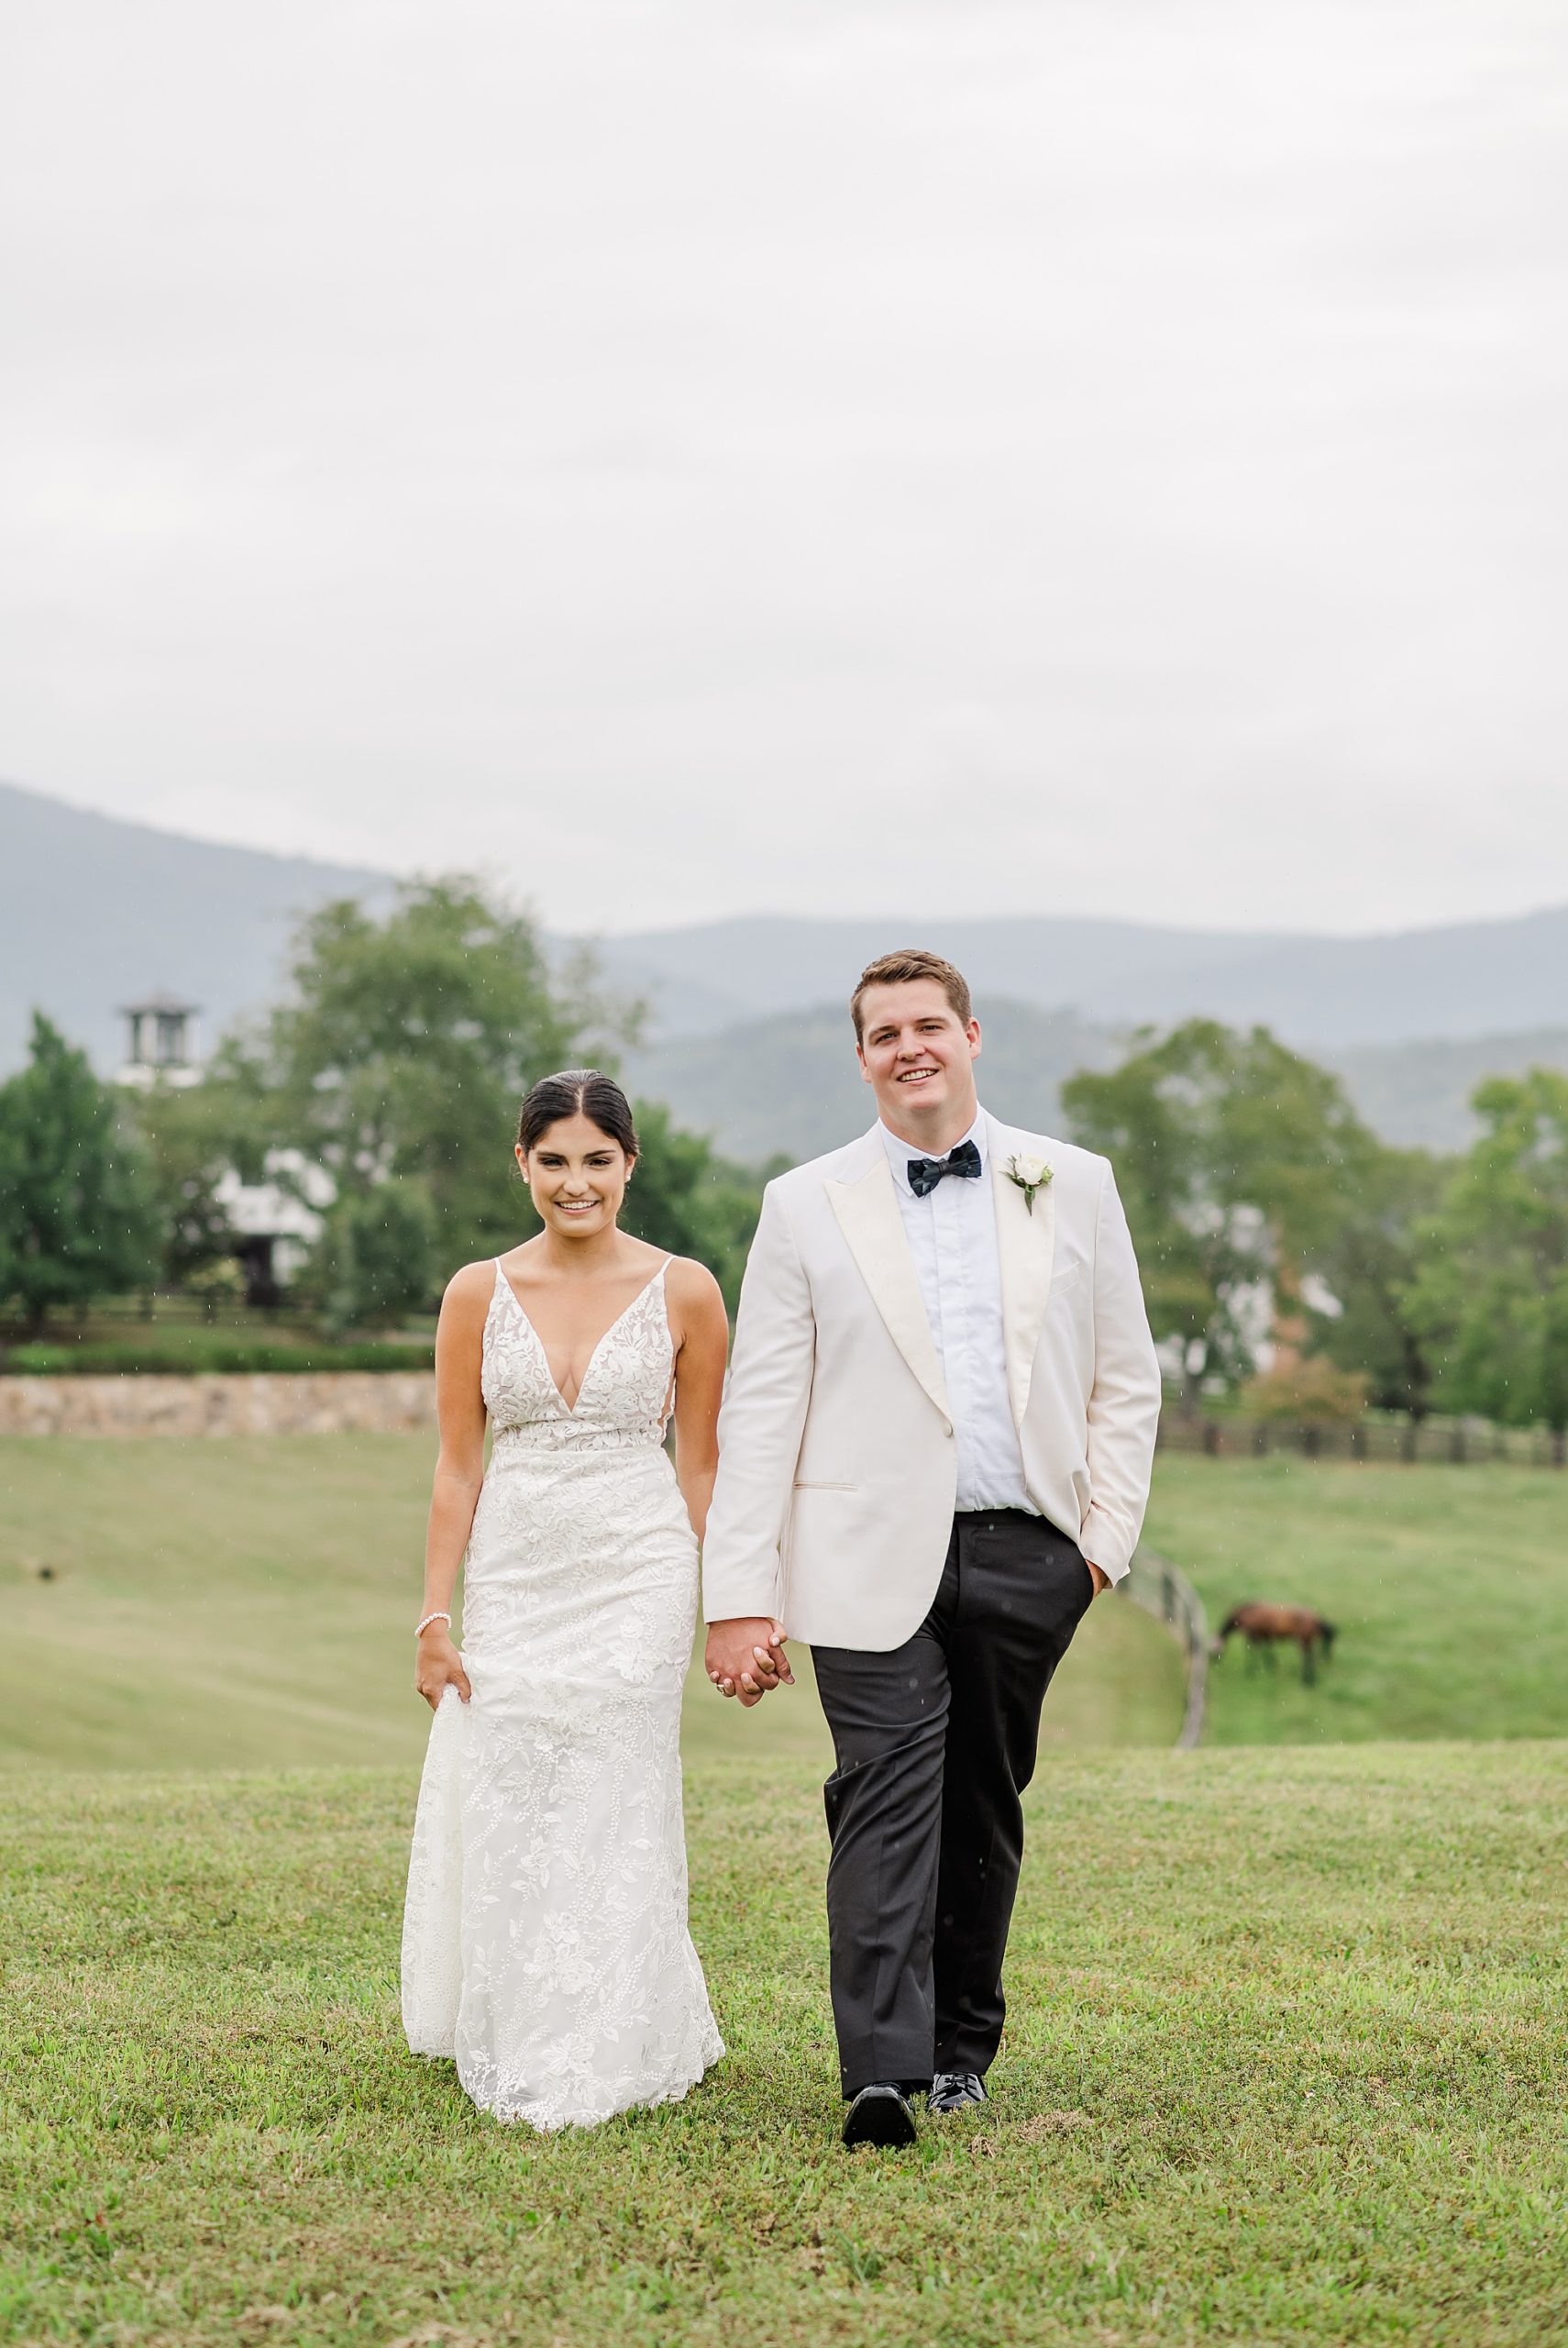 Bride and Groom Portraits at Mount Fair Farm Wedding Photographed by Virginia Wedding Photographer Kailey Brianna Photographer